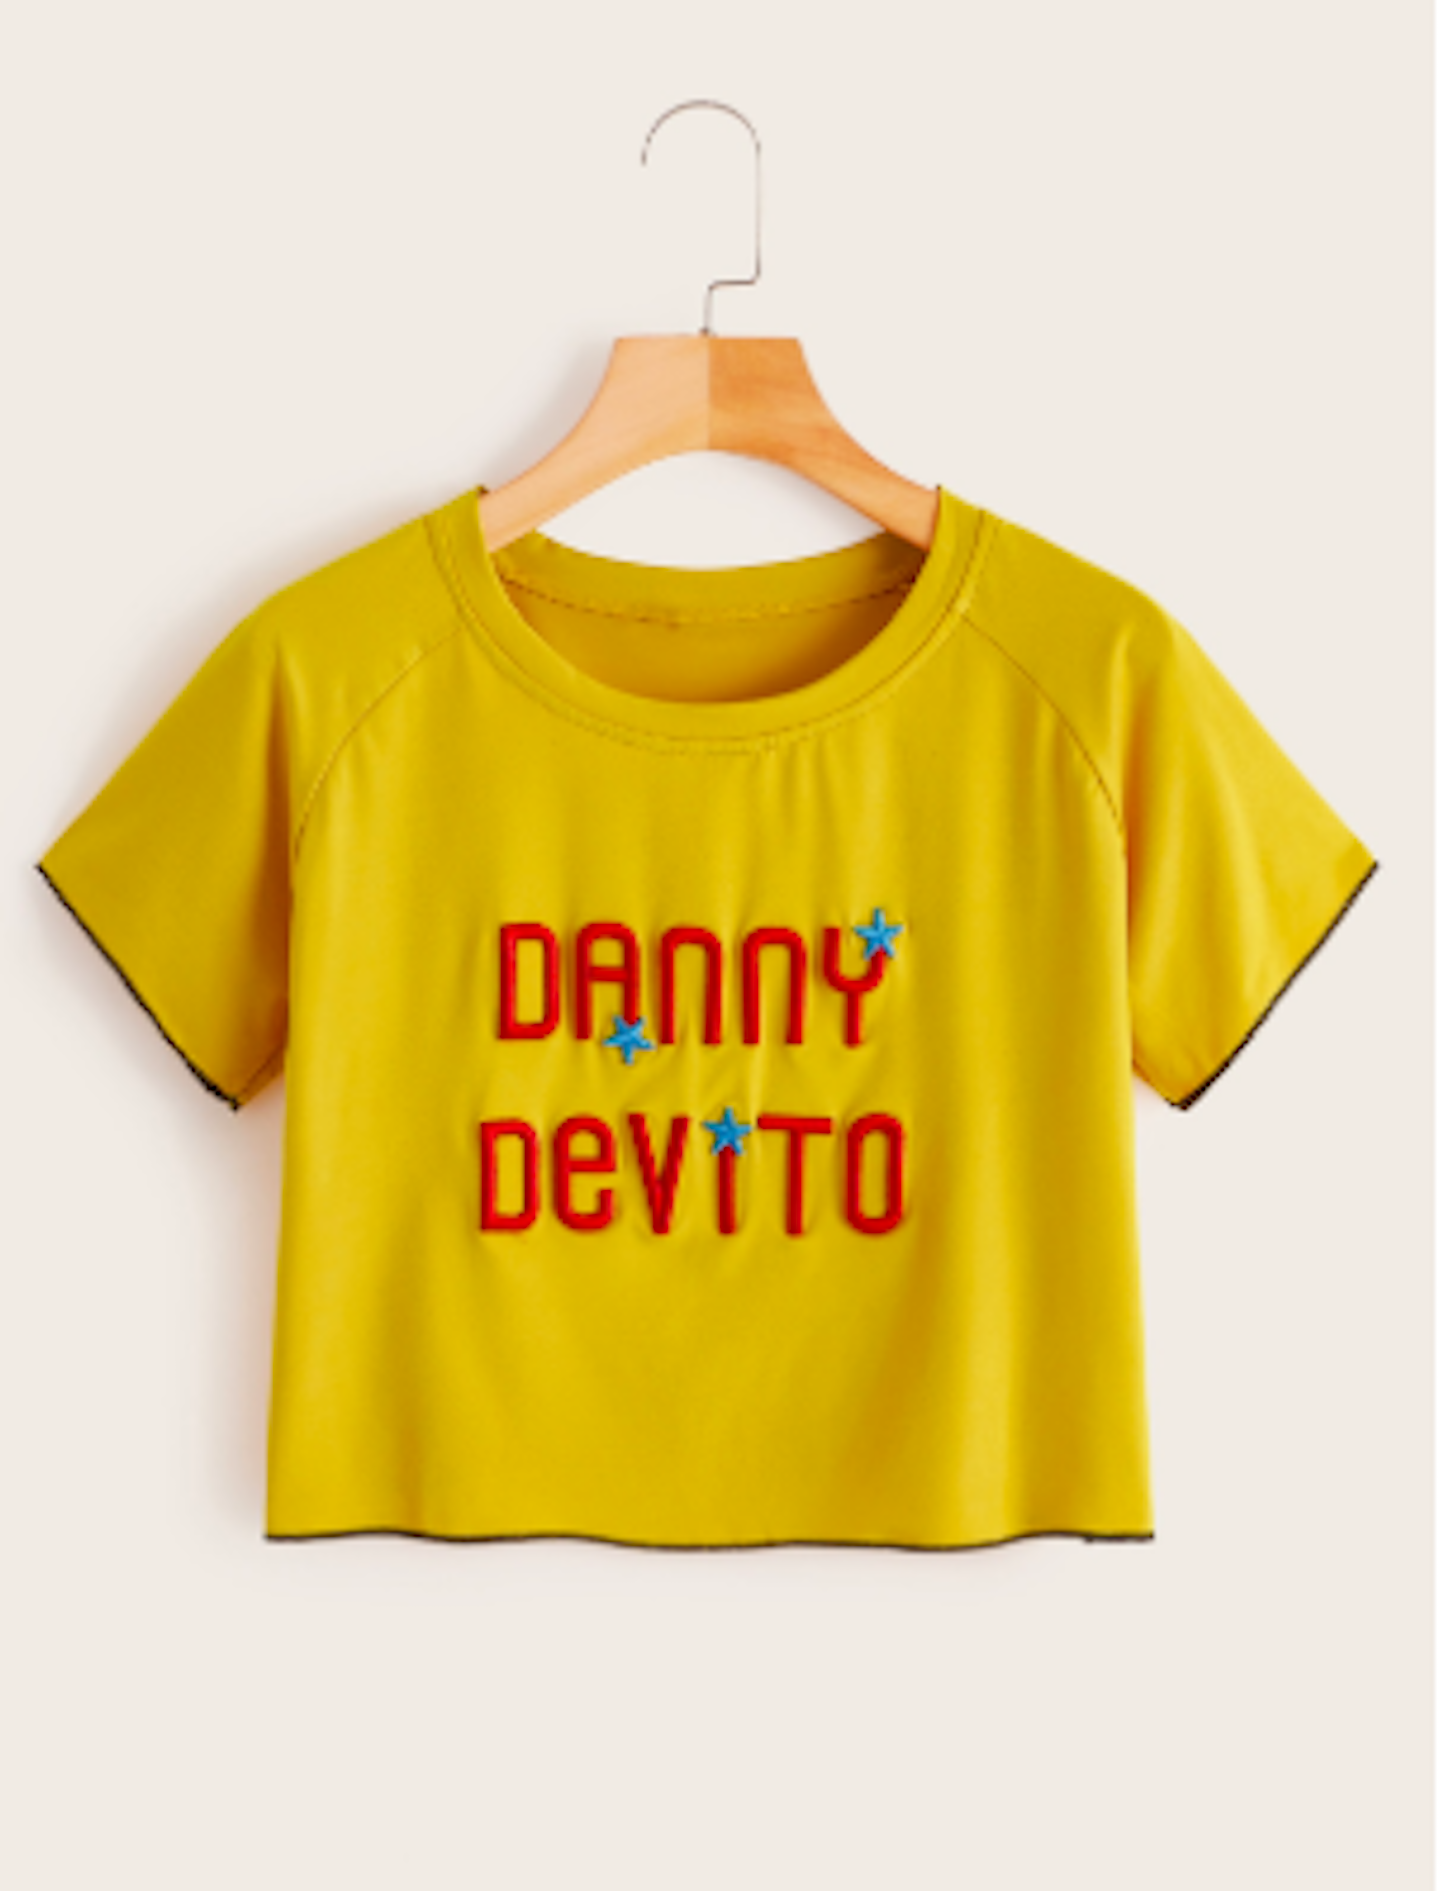 Danny devito crop top